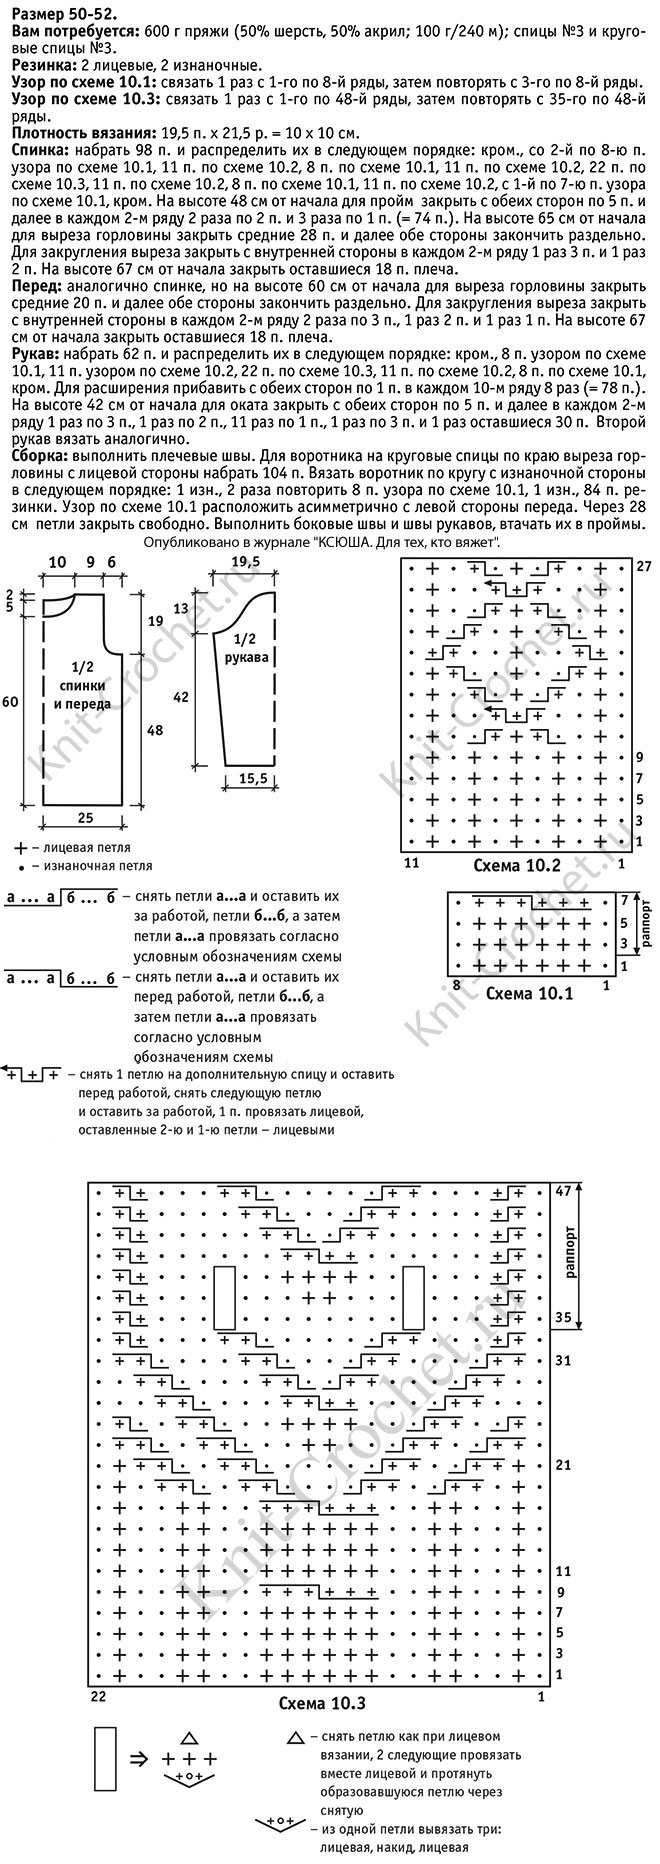 Выкройка, схемы узоров с описанием вязания спицами женского свитера размера 50-52.